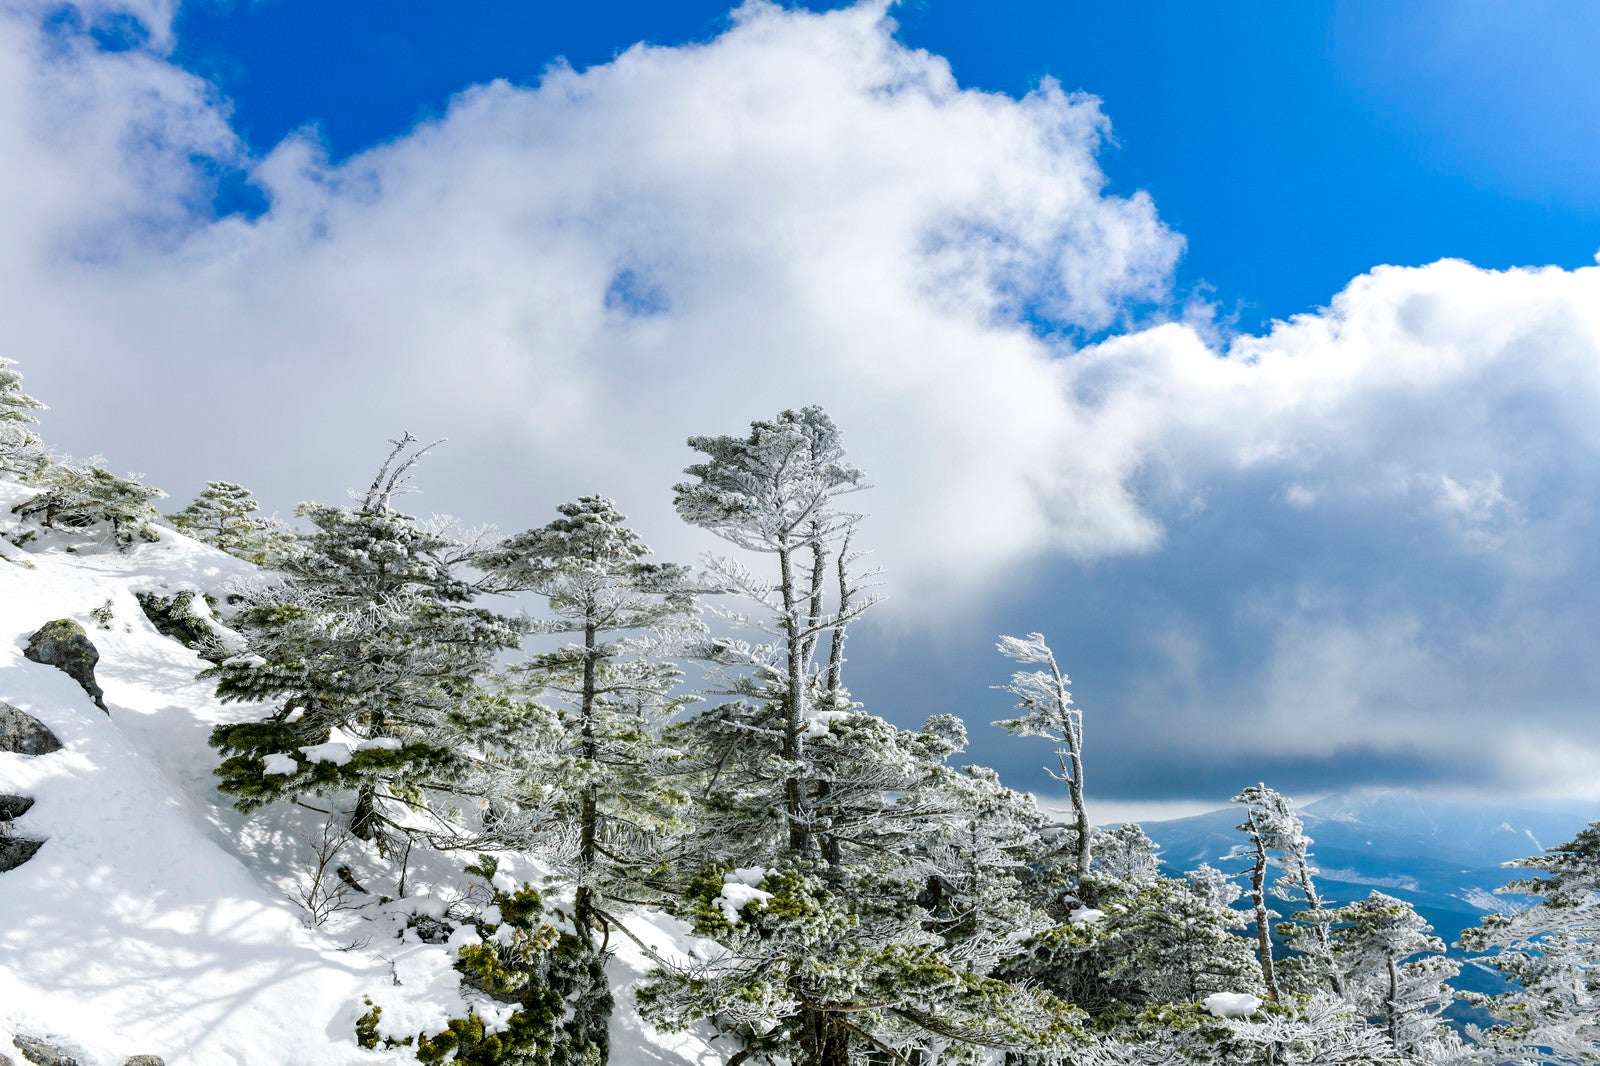 「凍った森と雲が広がる蓼科山の景色」の写真